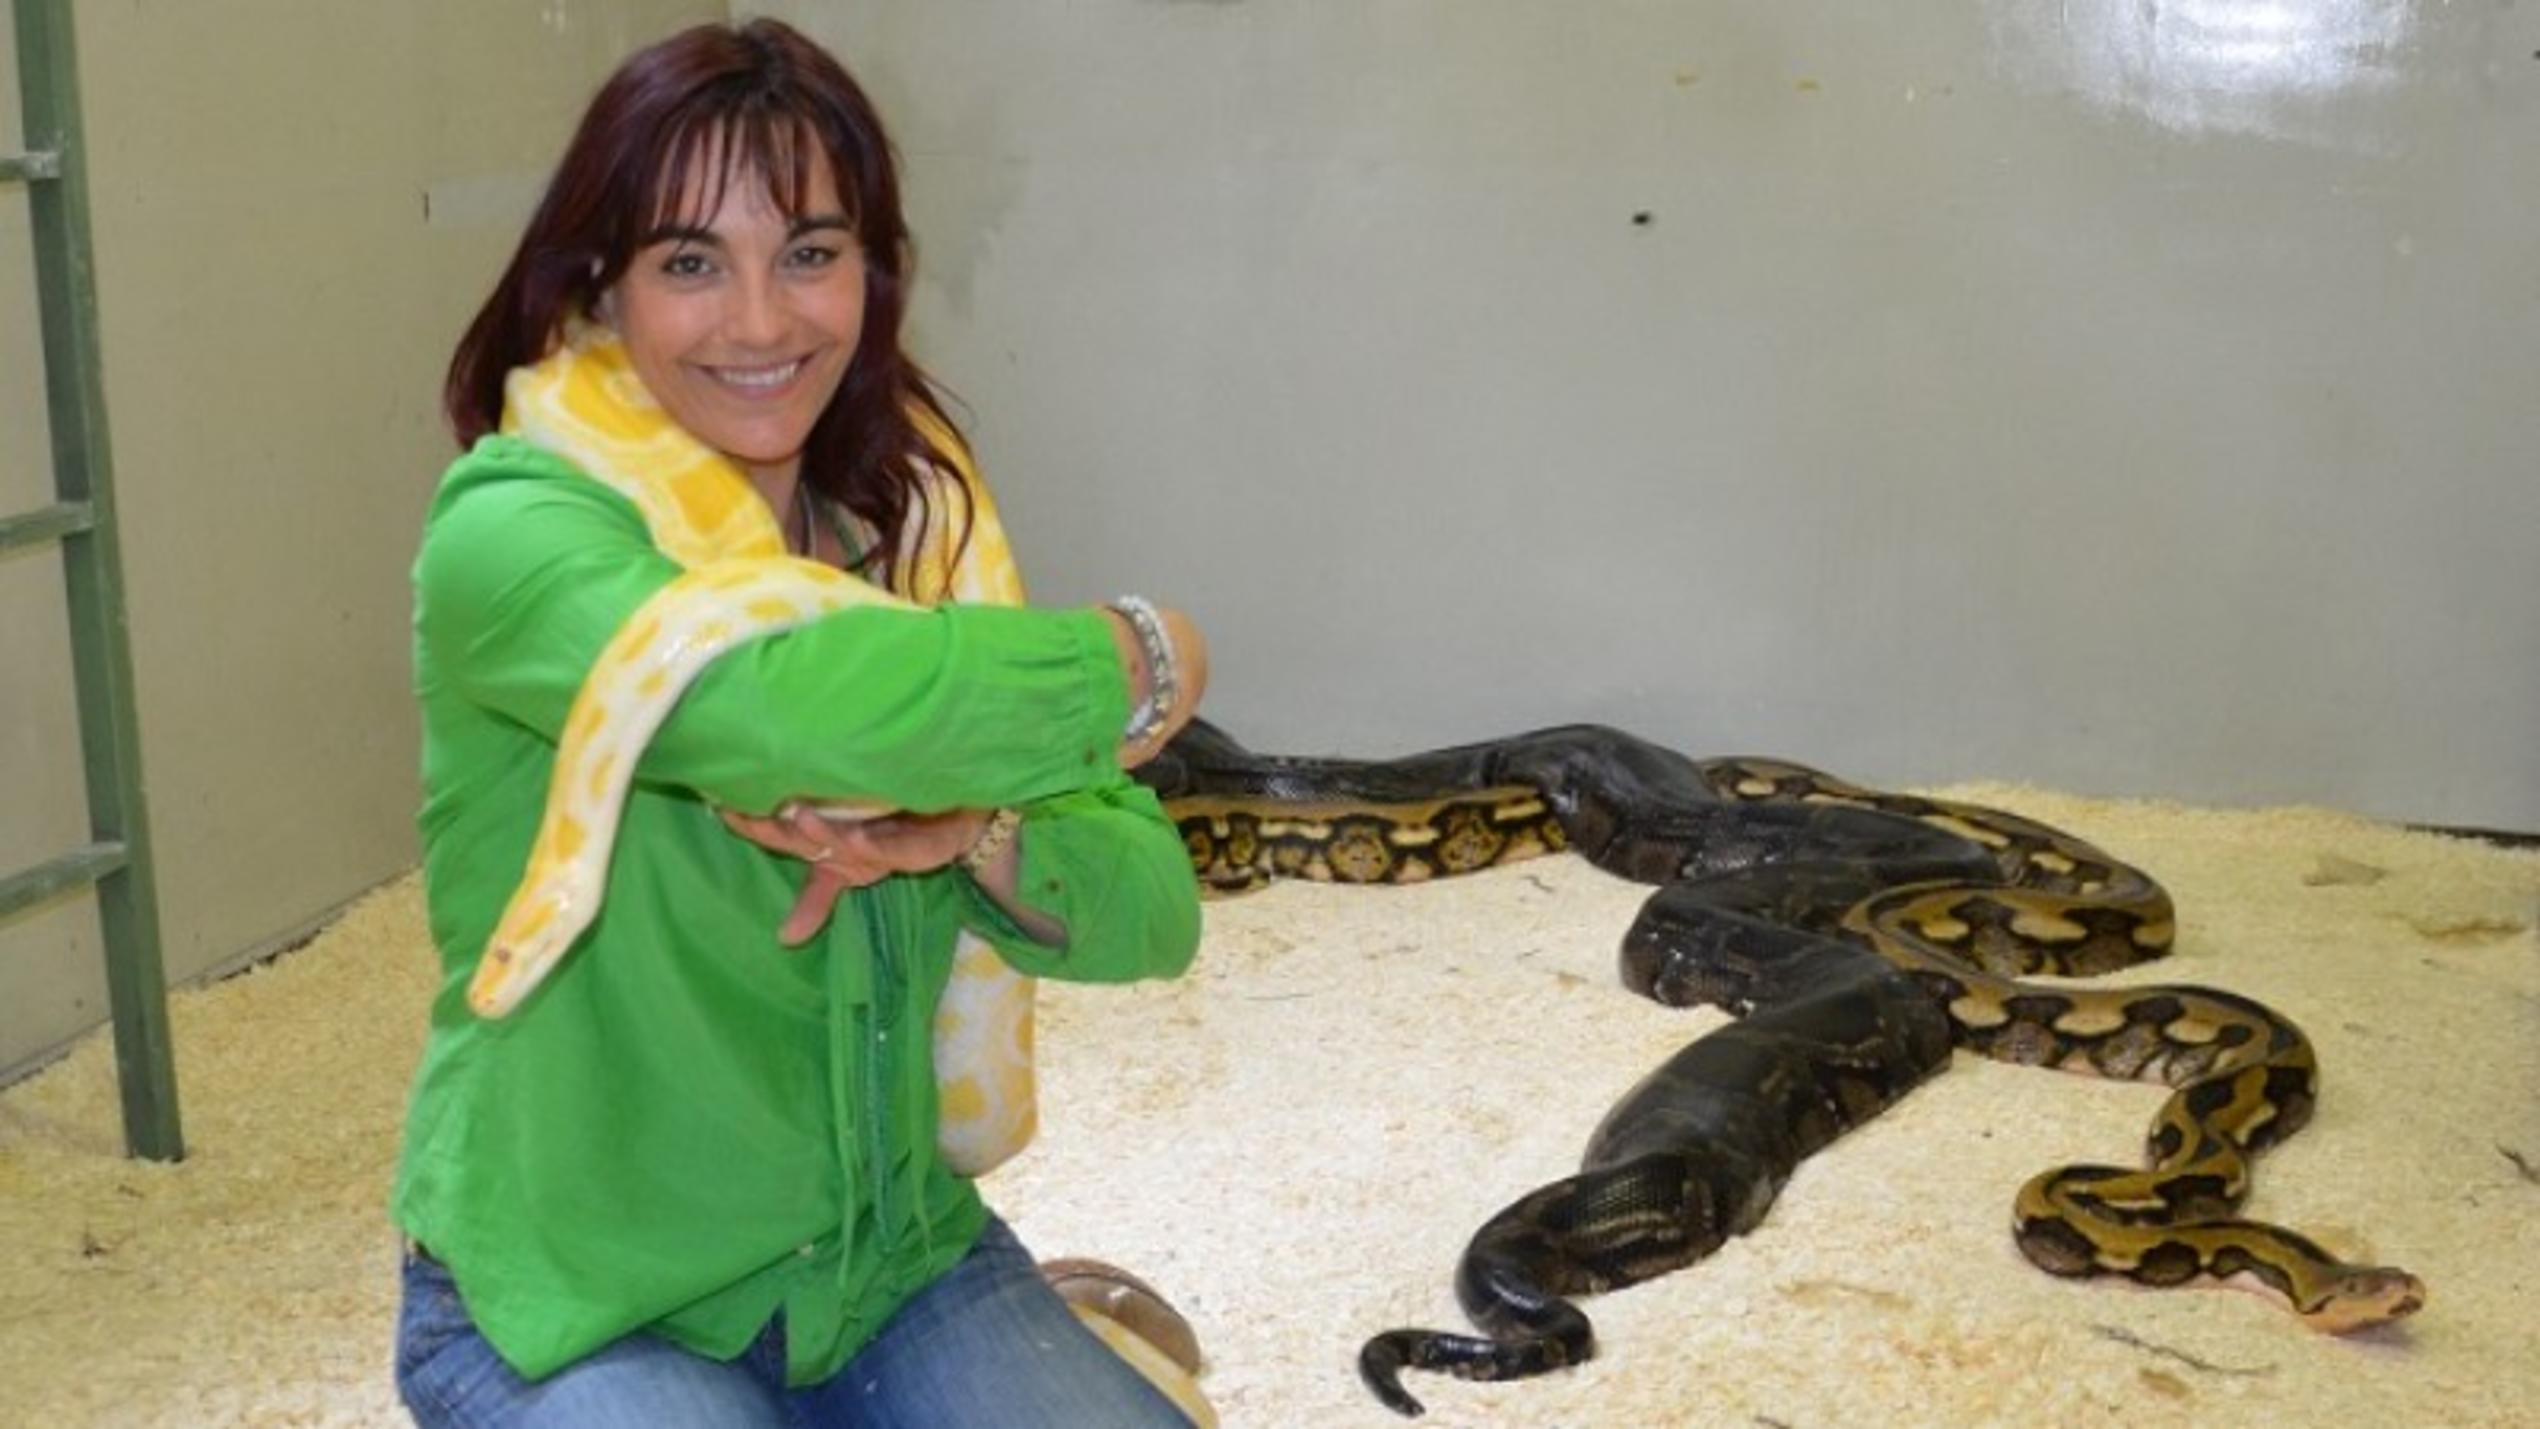 hundkatzemaus Diana Eichhorn besucht die Reptilienauffangstation München